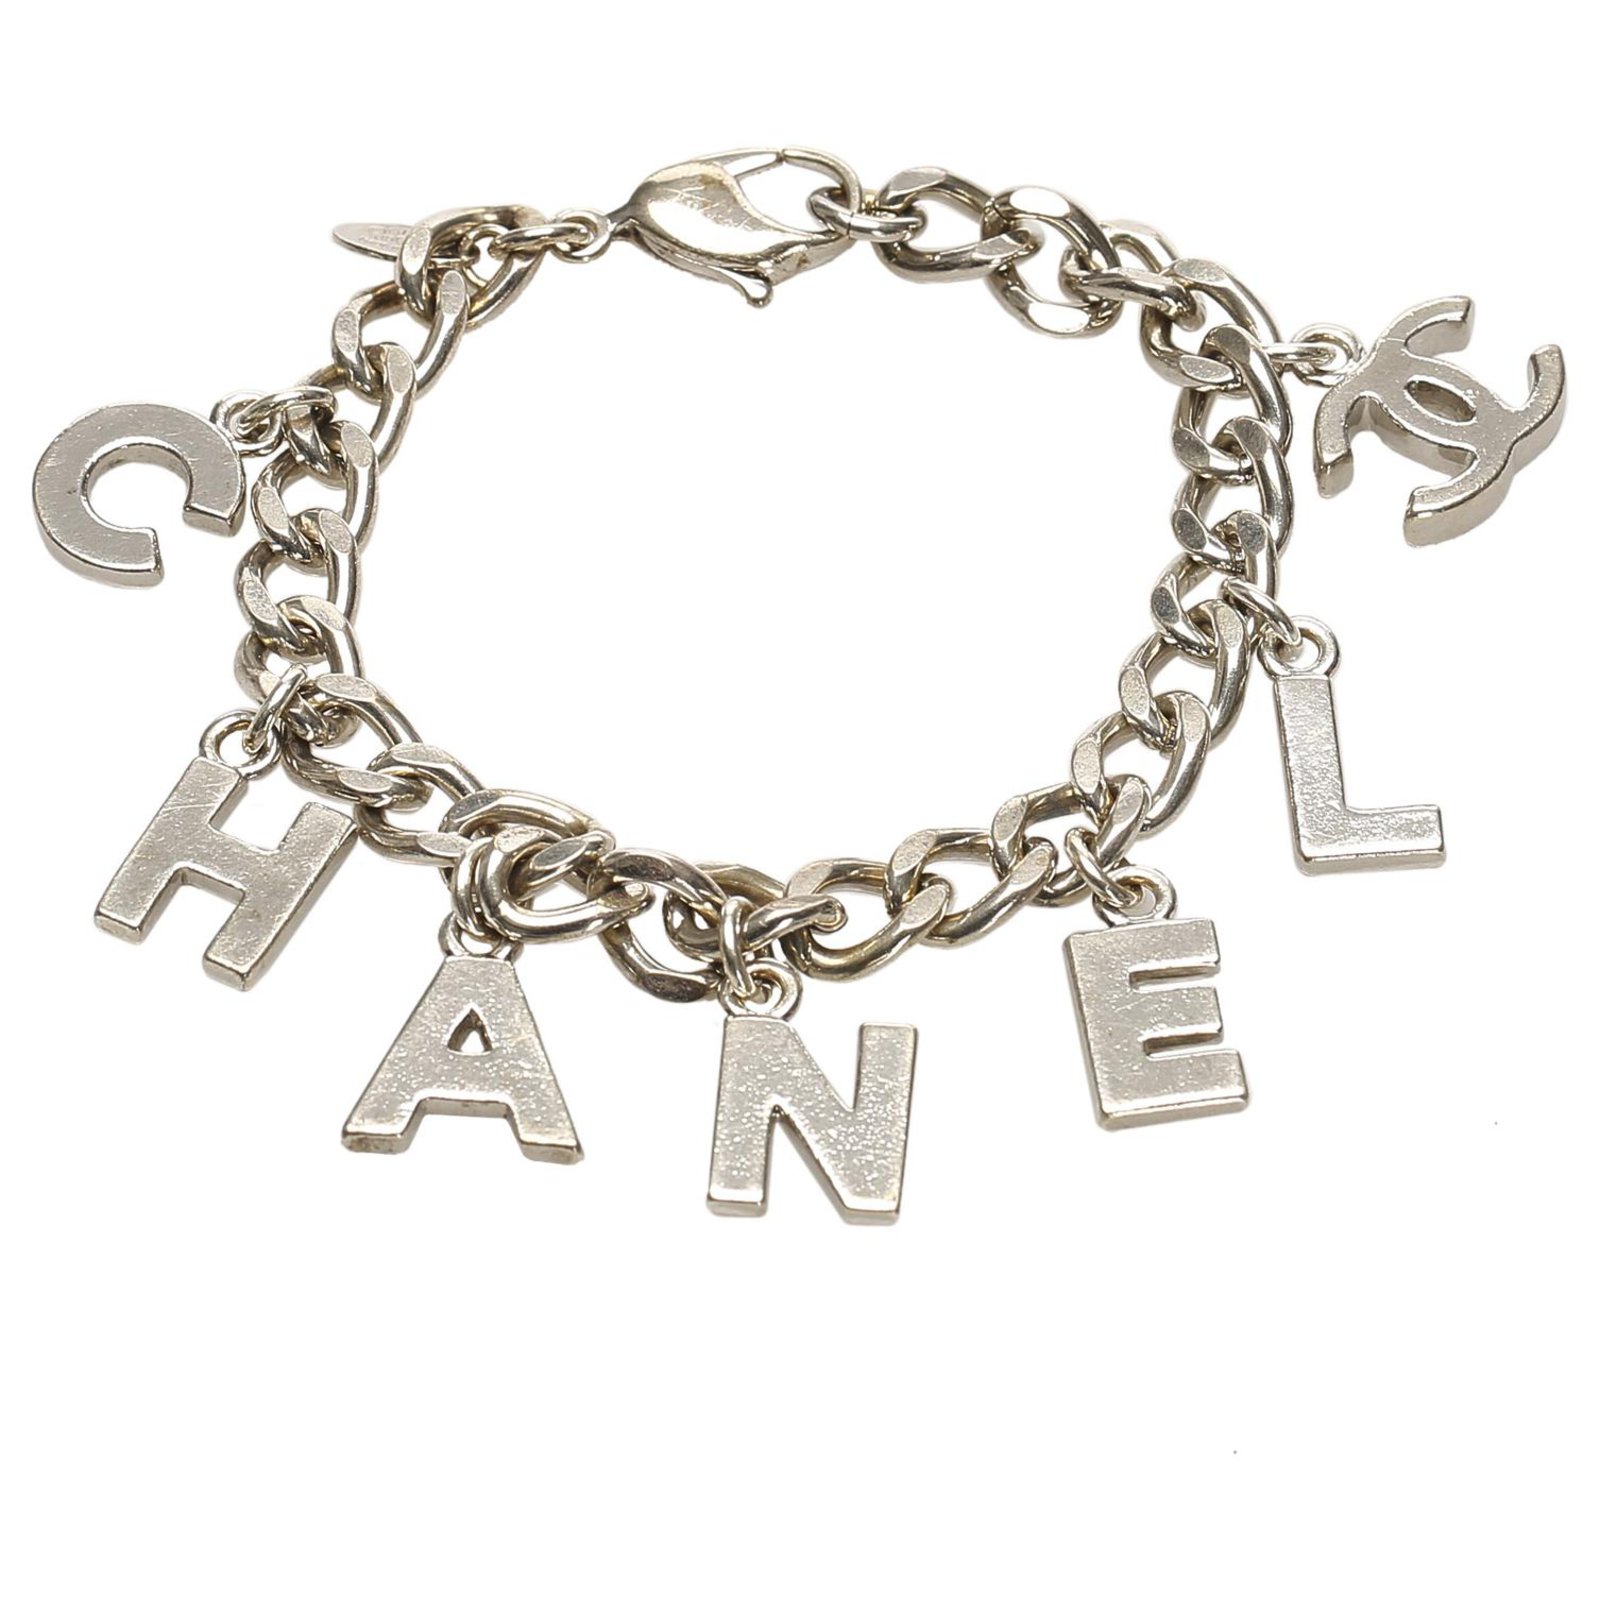 chanel bracelet silver